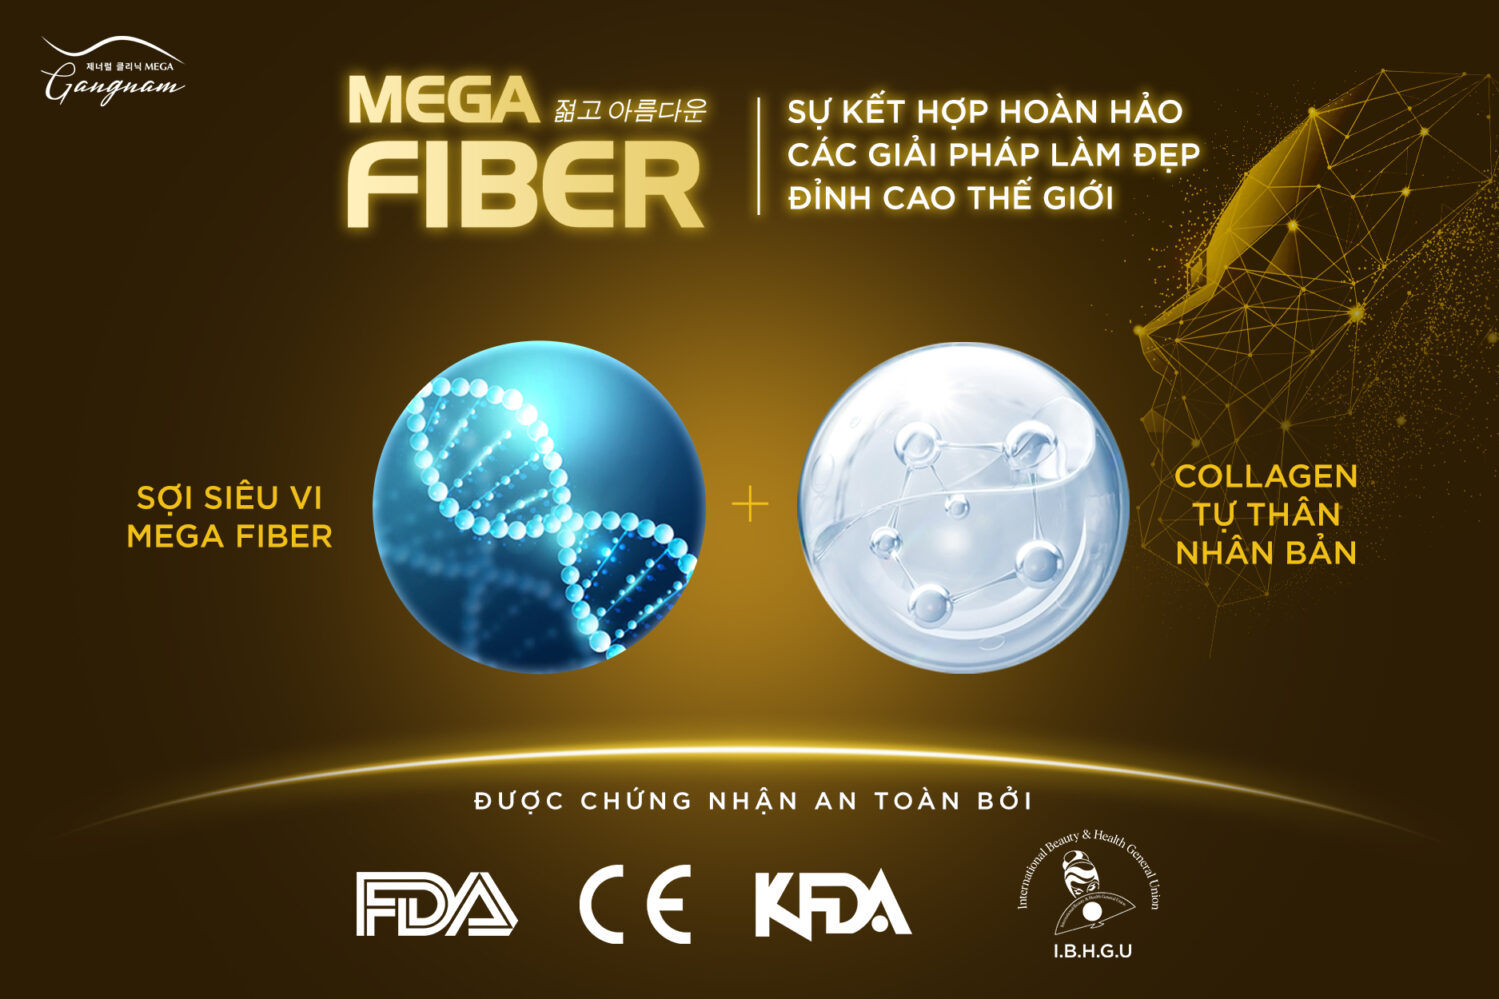 Sự kết hợp của sợi siêu vi Mega Fiber và Collagen tự thân nhân bản trẻ hóa gấp nhiều lần so với công nghệ khác trên thị trường